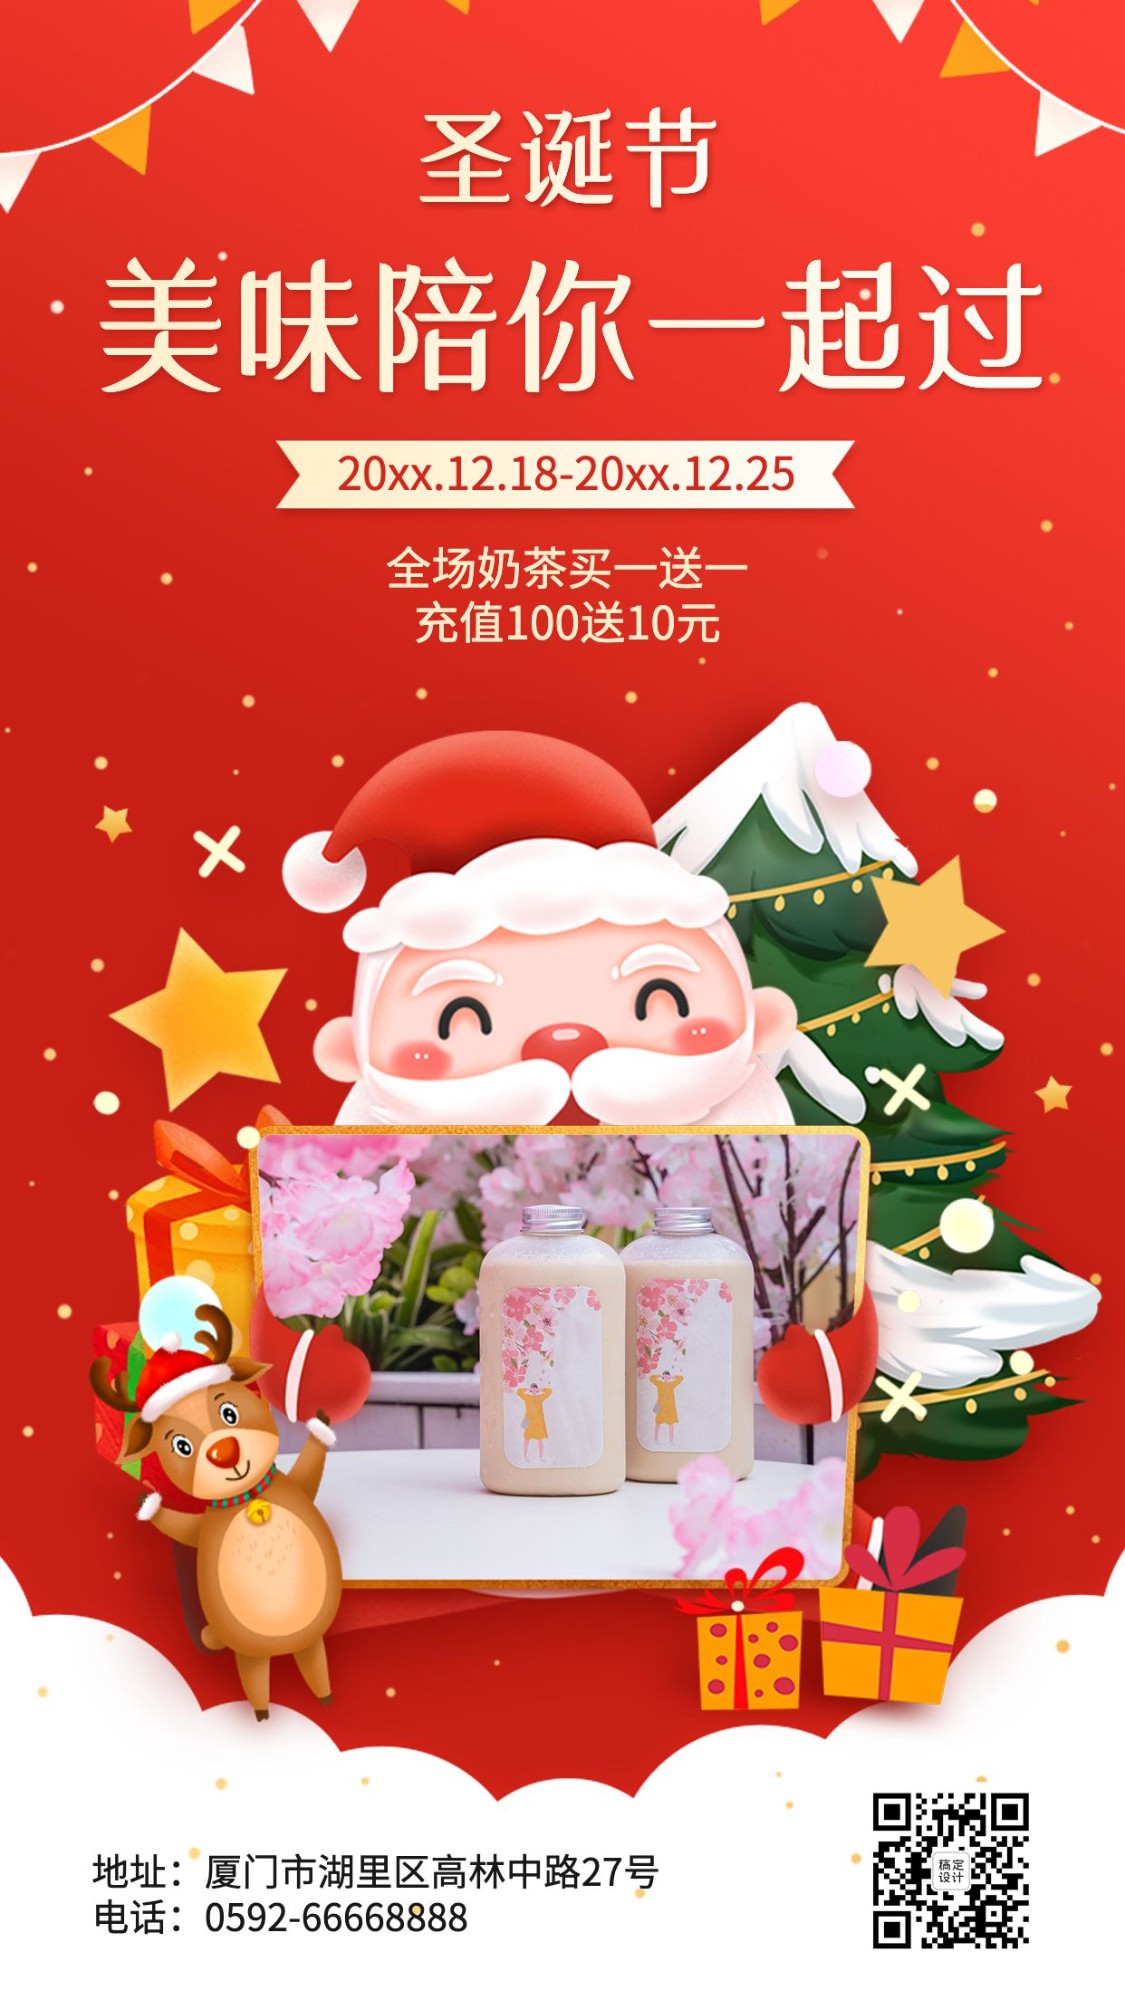 圣诞节奶茶饮品营销圣诞老人海报预览效果